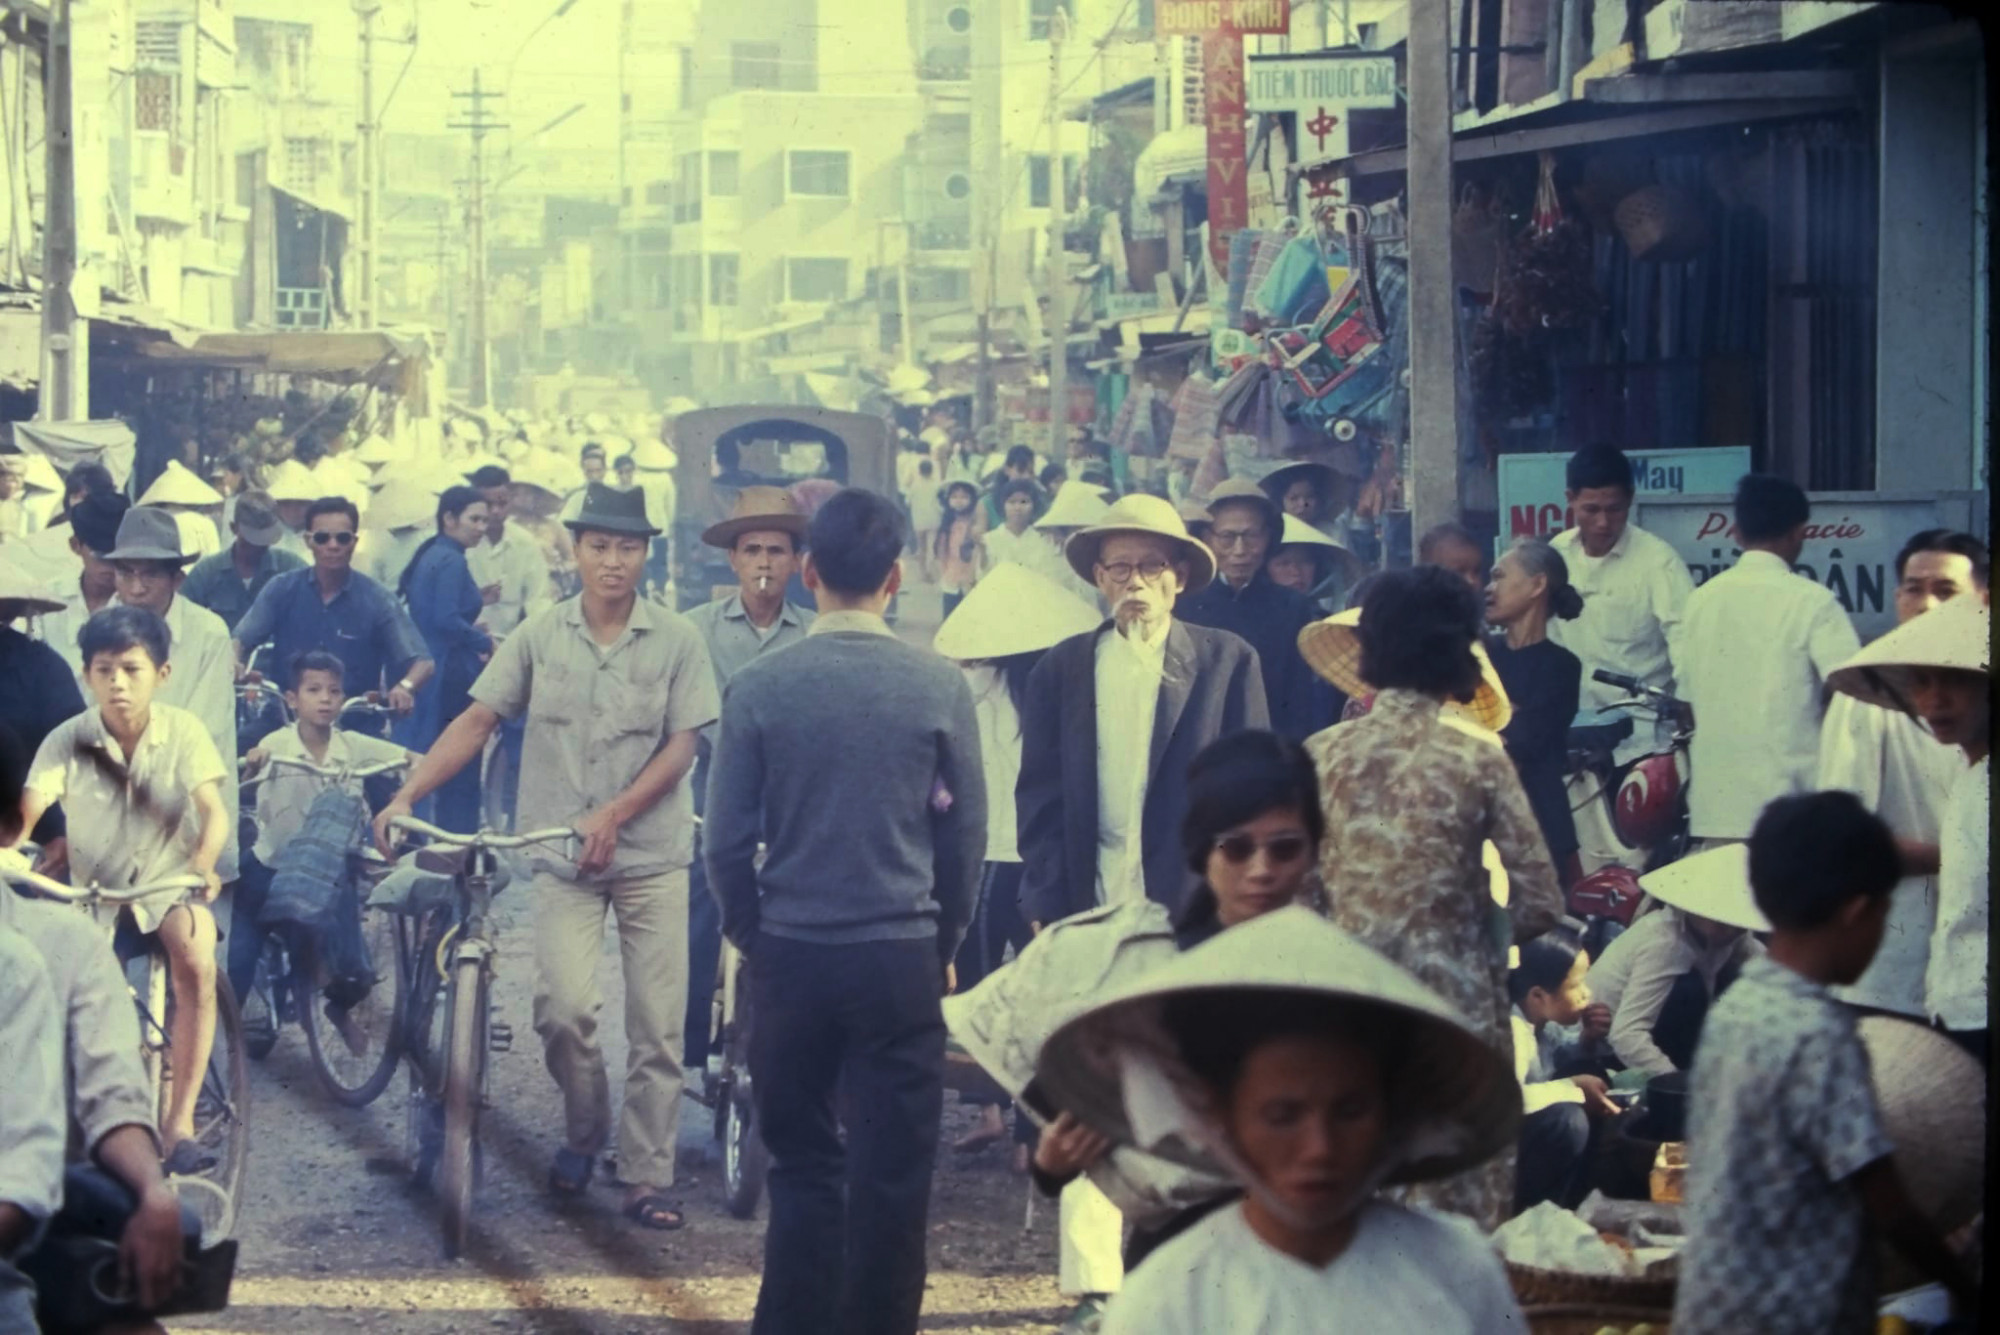 Chợ Tết Ông Tạ trước năm 1975. Ảnh tư liệu từ sách